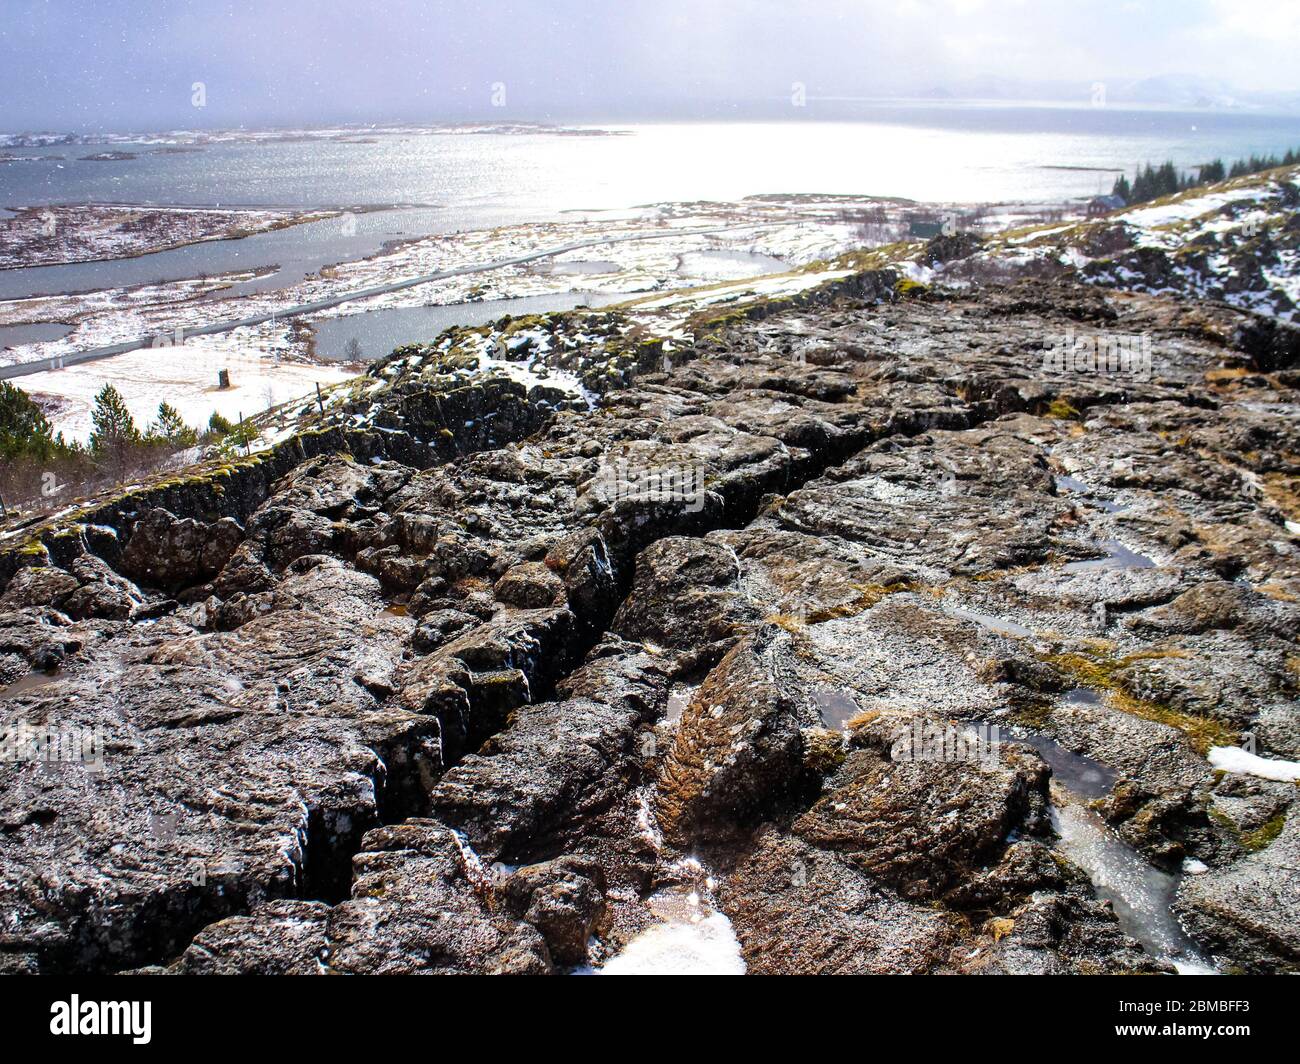 Ebenen von Thingvellir (Þingvellir) in Island, das tektonische Rifttal der nordamerikanischen und eurasischen Kontinentalplatten am Goldenen Kreis. Stockfoto